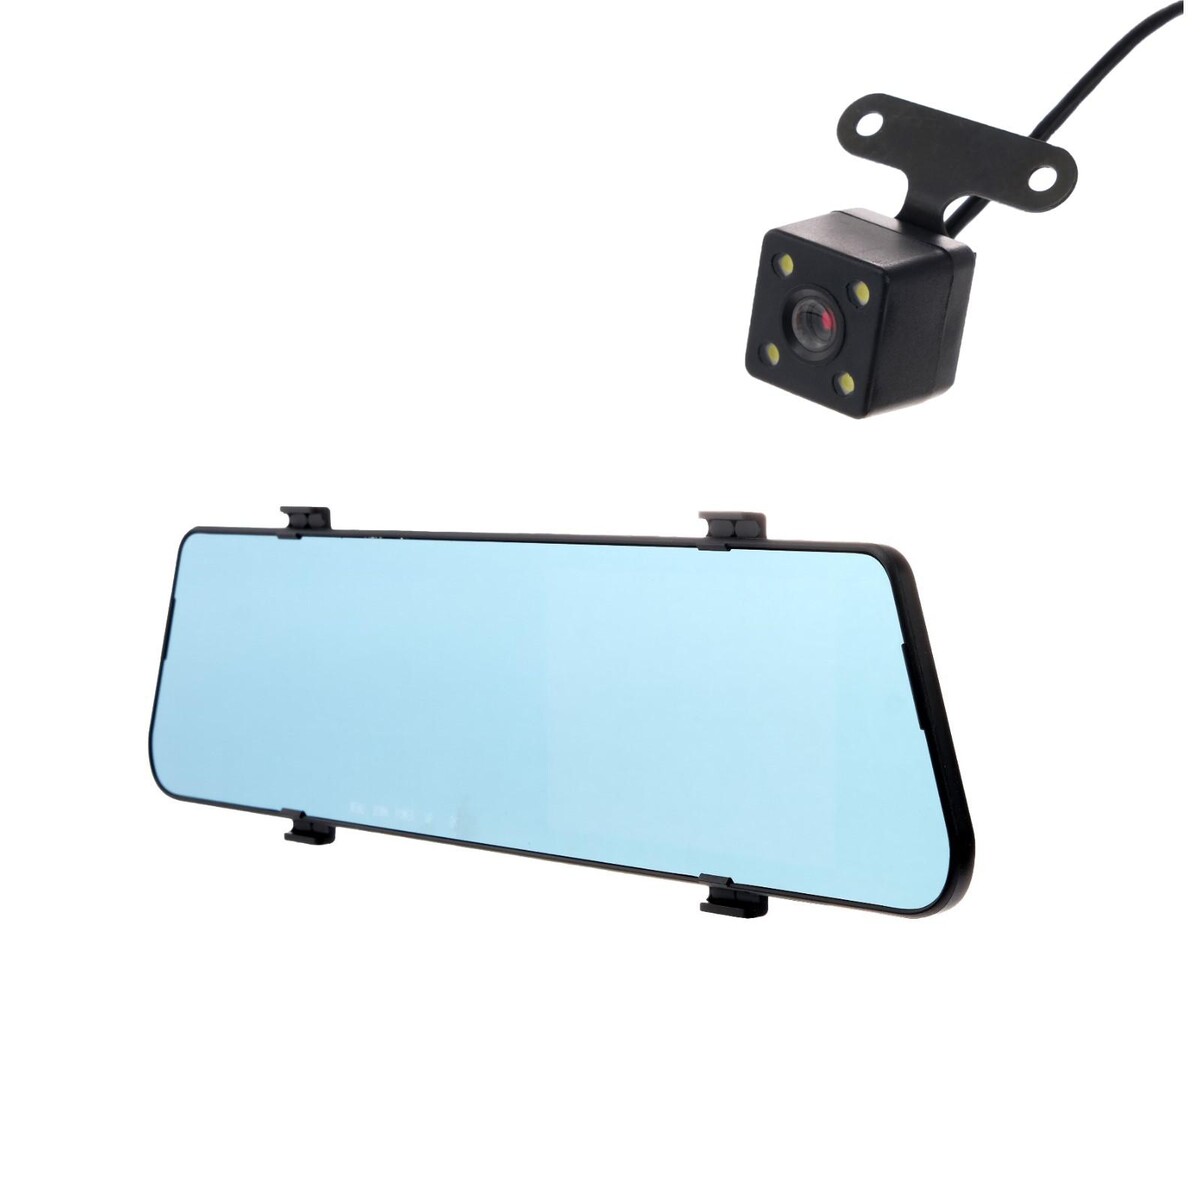 Видеорегистратор cartage, 2 камеры, hd 1080p, размер 30×7.5 см, tft 4.5, обзор 140° видеорегистратор viper f9000 duo